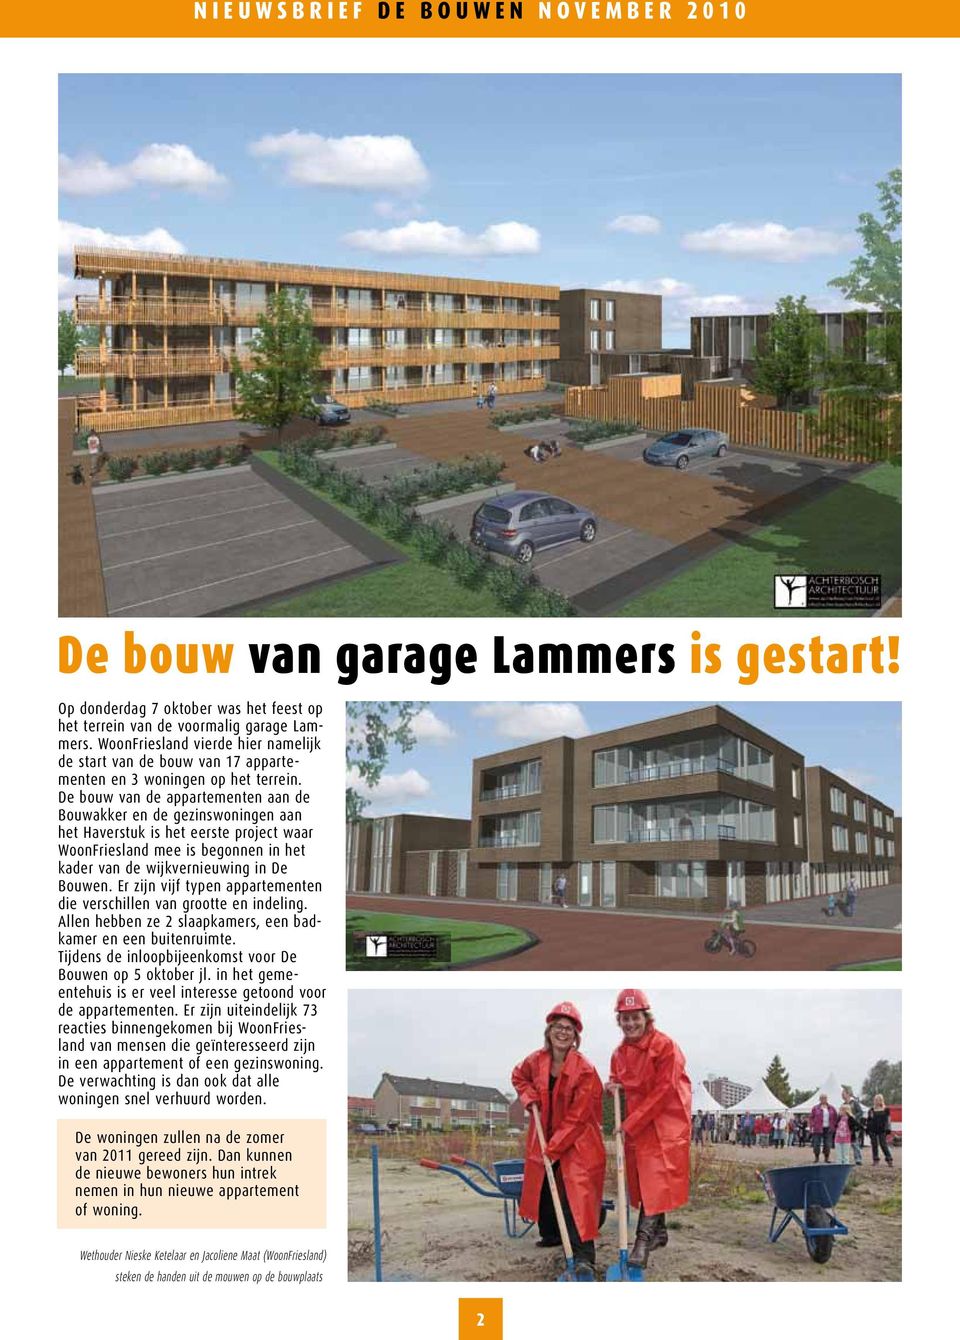 De bouw van de appartementen aan de Bouwakker en de gezinswoningen aan het Haverstuk is het eerste project waar WoonFriesland mee is begonnen in het kader van de wijkvernieuwing in De Bouwen.